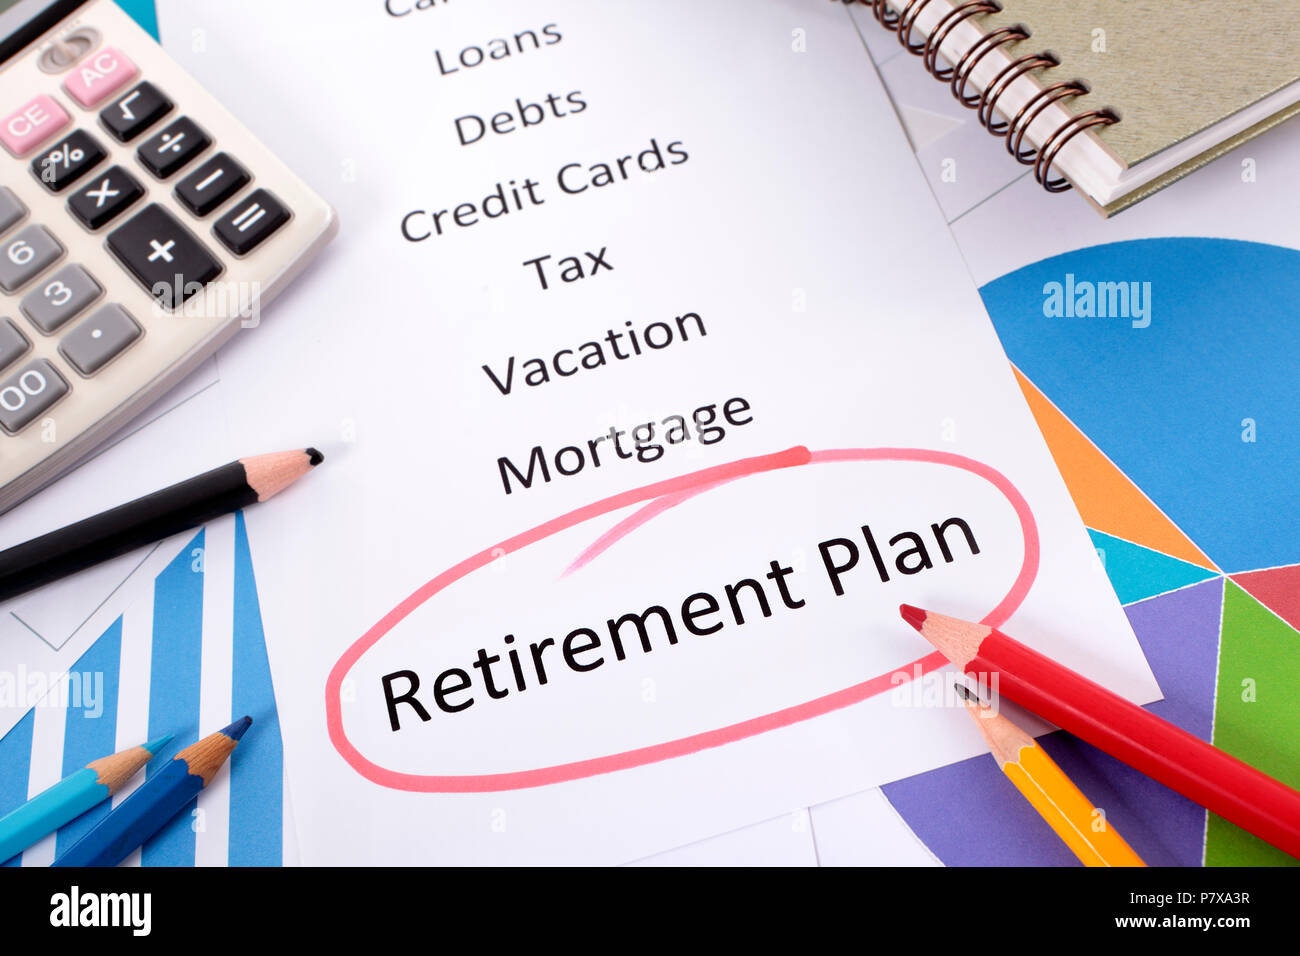 Les mots Plan de retraite entourée en rouge avec une liste de l'épargne et de créance entouré par des graphiques, des tableaux, des livres et des crayons. Banque D'Images